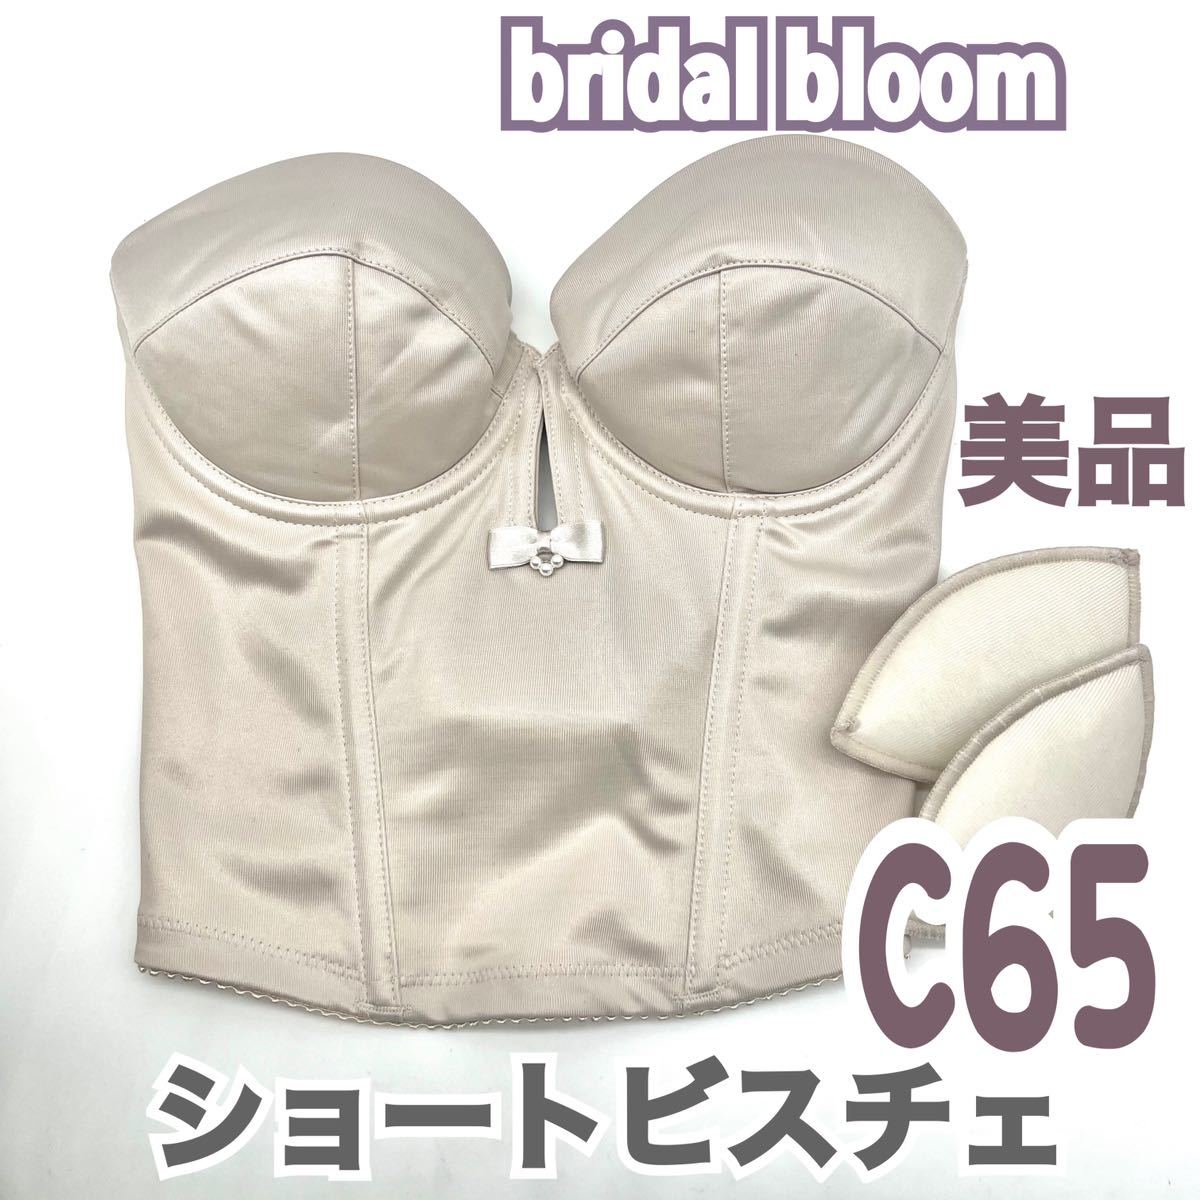 美 bridal bloom ブライダルブルーム ショート ビスチェ ブラ C65 補正